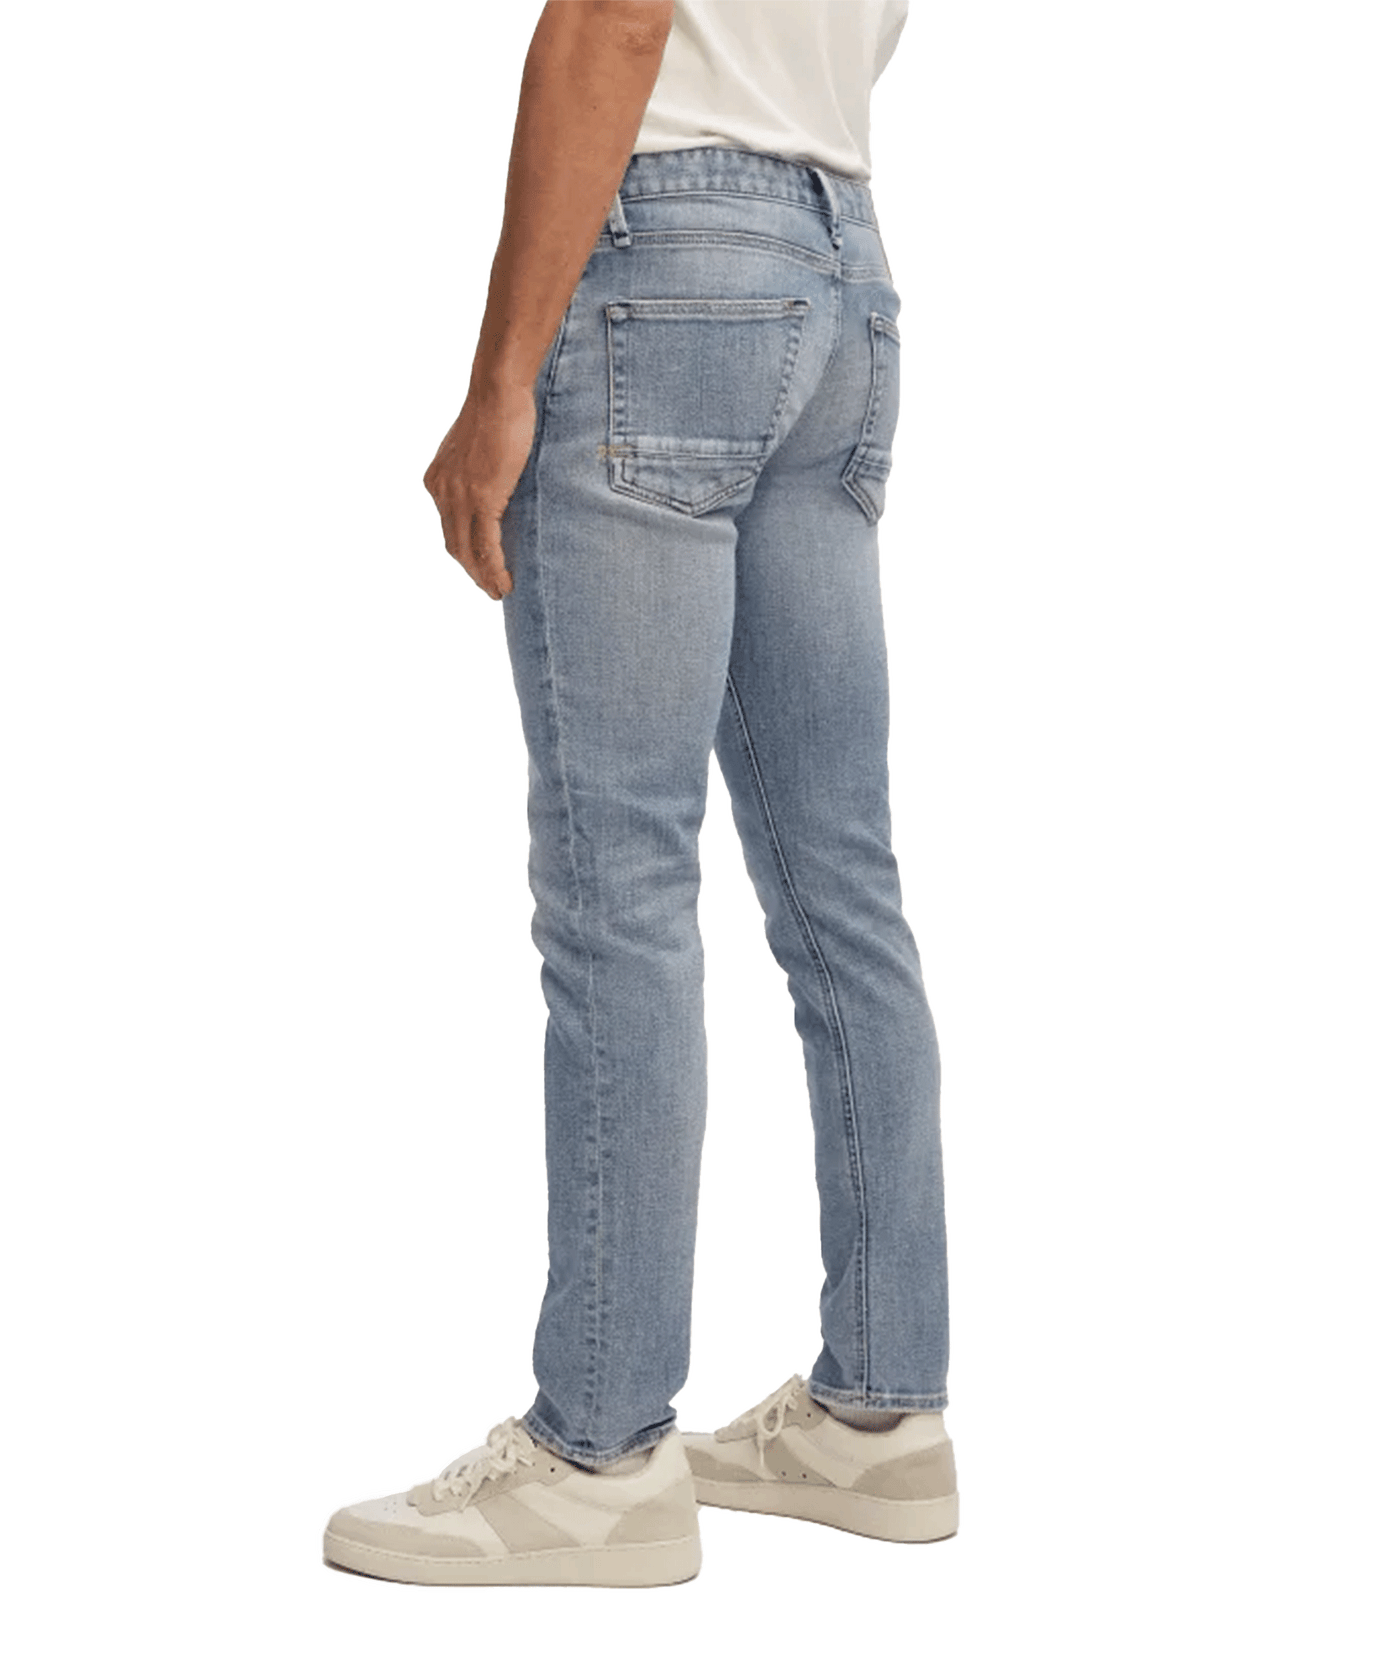 Denham - Razor - Jeans - Authentic Medium Worn